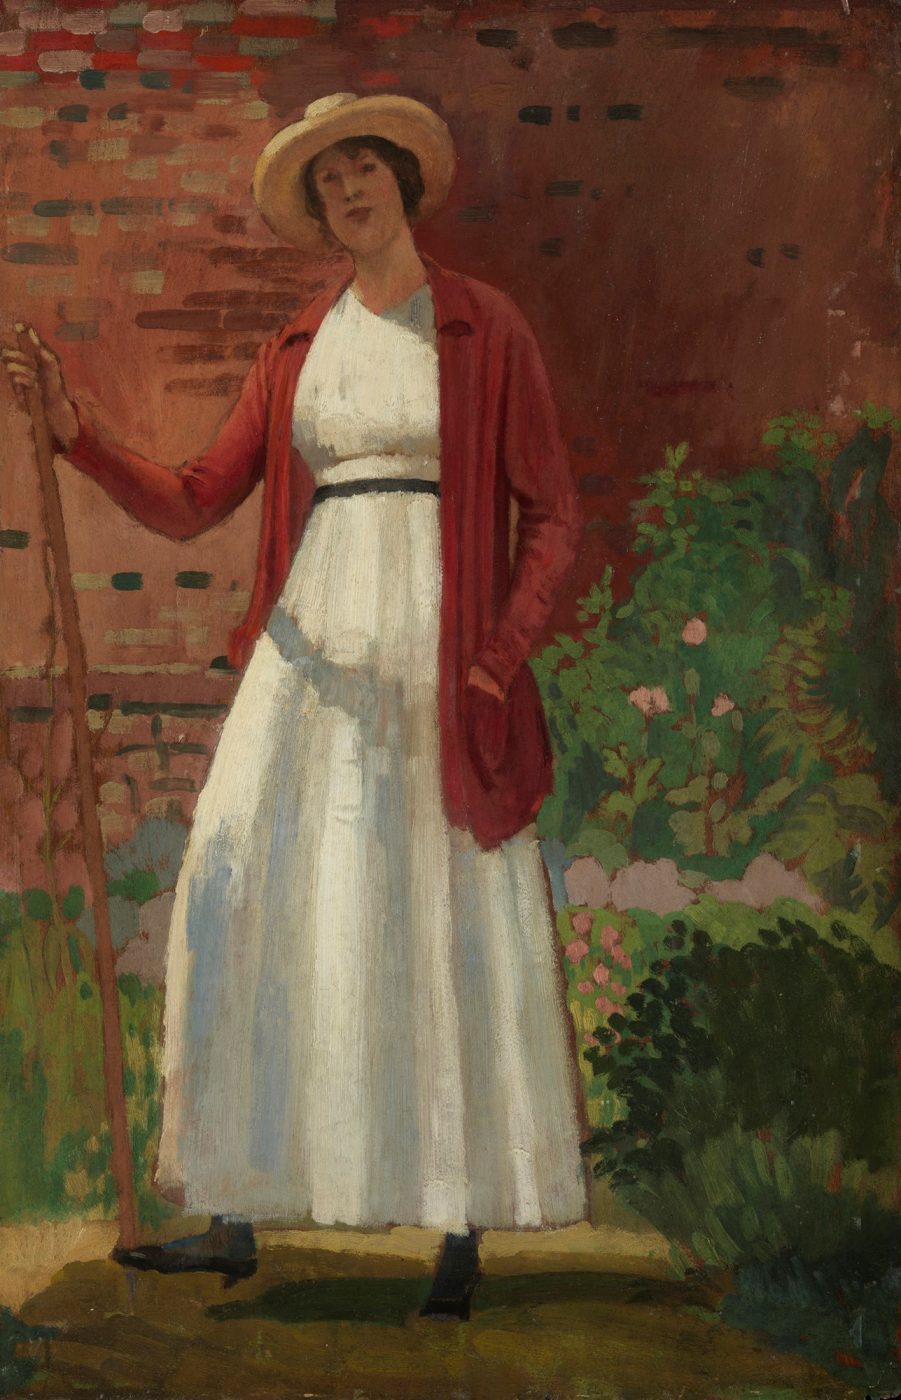 Derwent Lees (1884-1931), Lyndra in the Garden